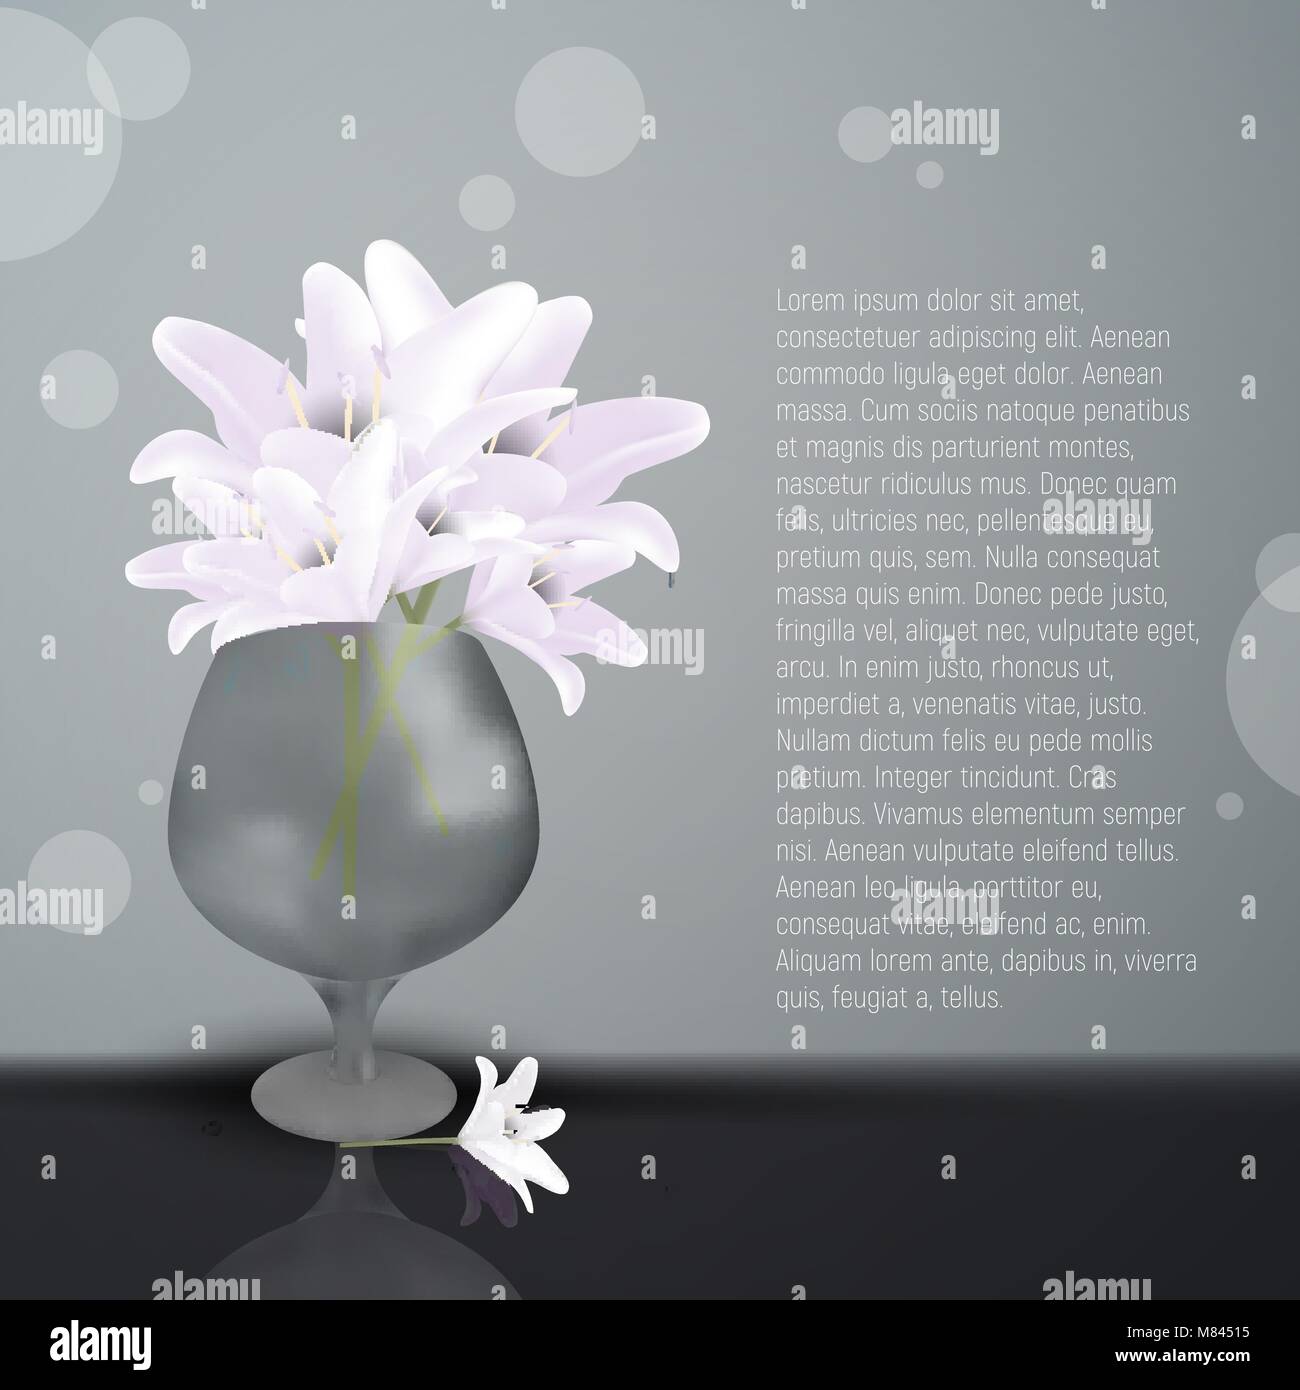 Lily fleurs dans vase en verre. Vector illustration de blooming lilia avec pétales blancs. Place pour votre texte. L'art de beauté avec lilly fleur. Greet mariage Illustration de Vecteur